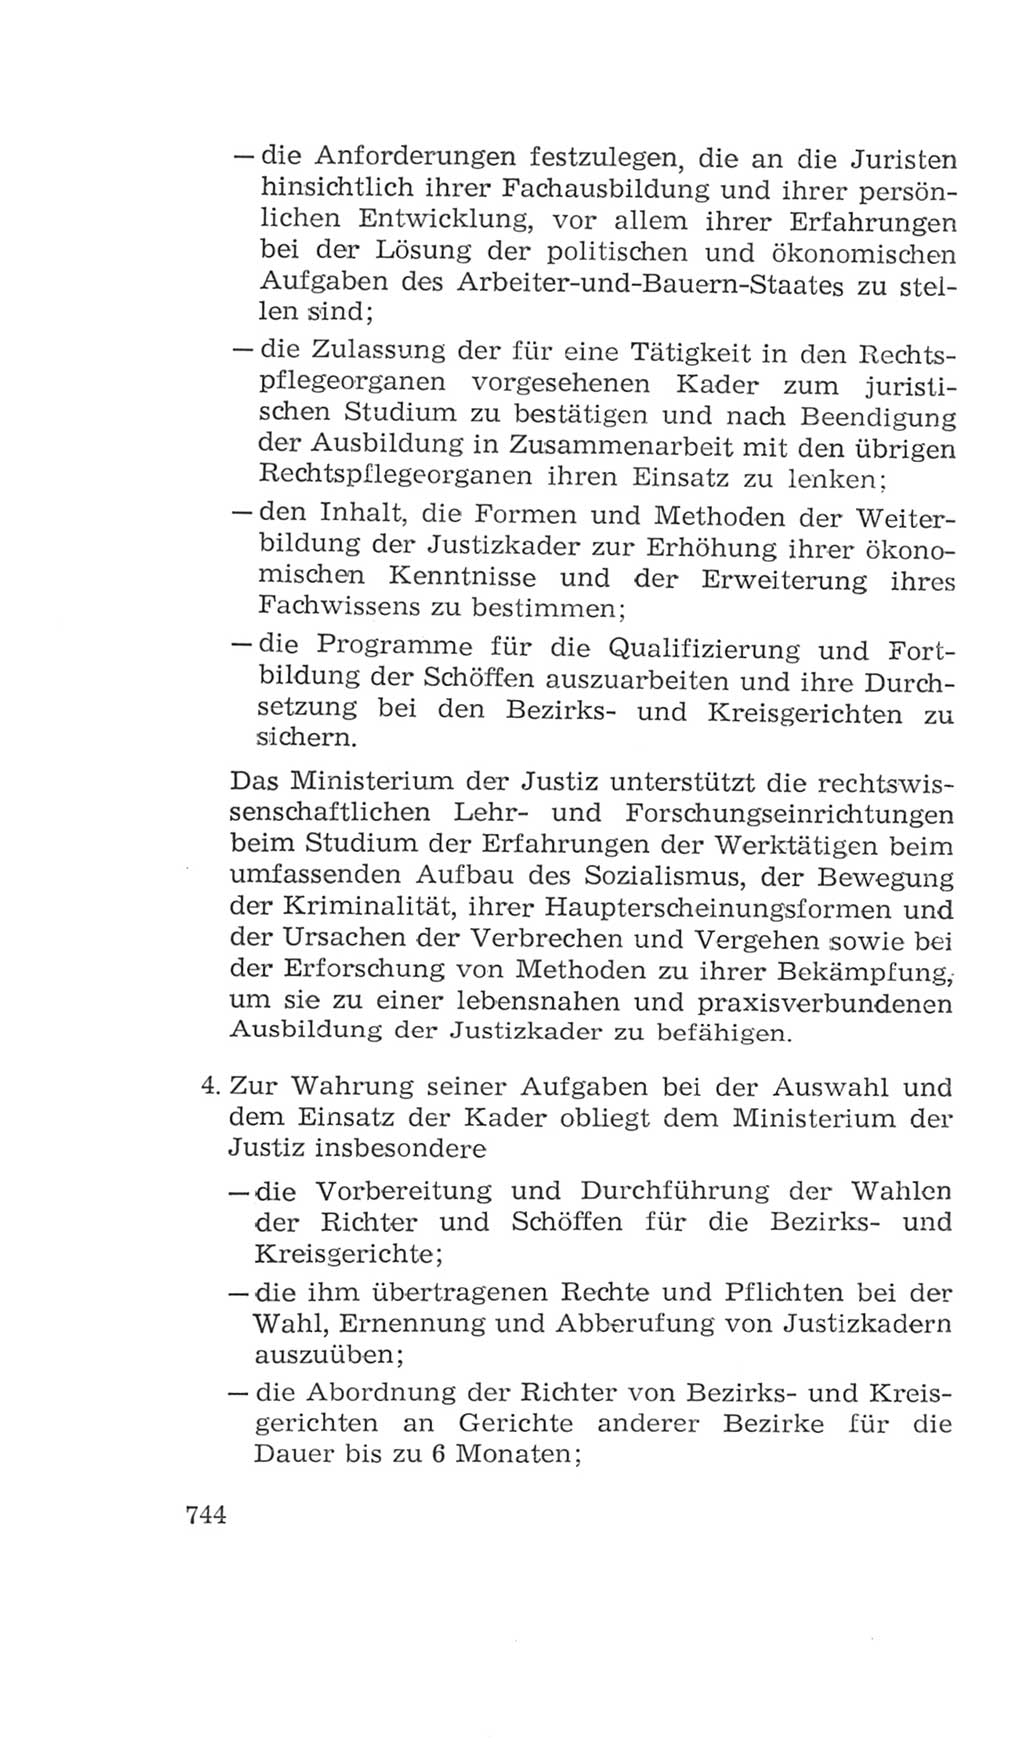 Volkskammer (VK) der Deutschen Demokratischen Republik (DDR), 4. Wahlperiode 1963-1967, Seite 744 (VK. DDR 4. WP. 1963-1967, S. 744)